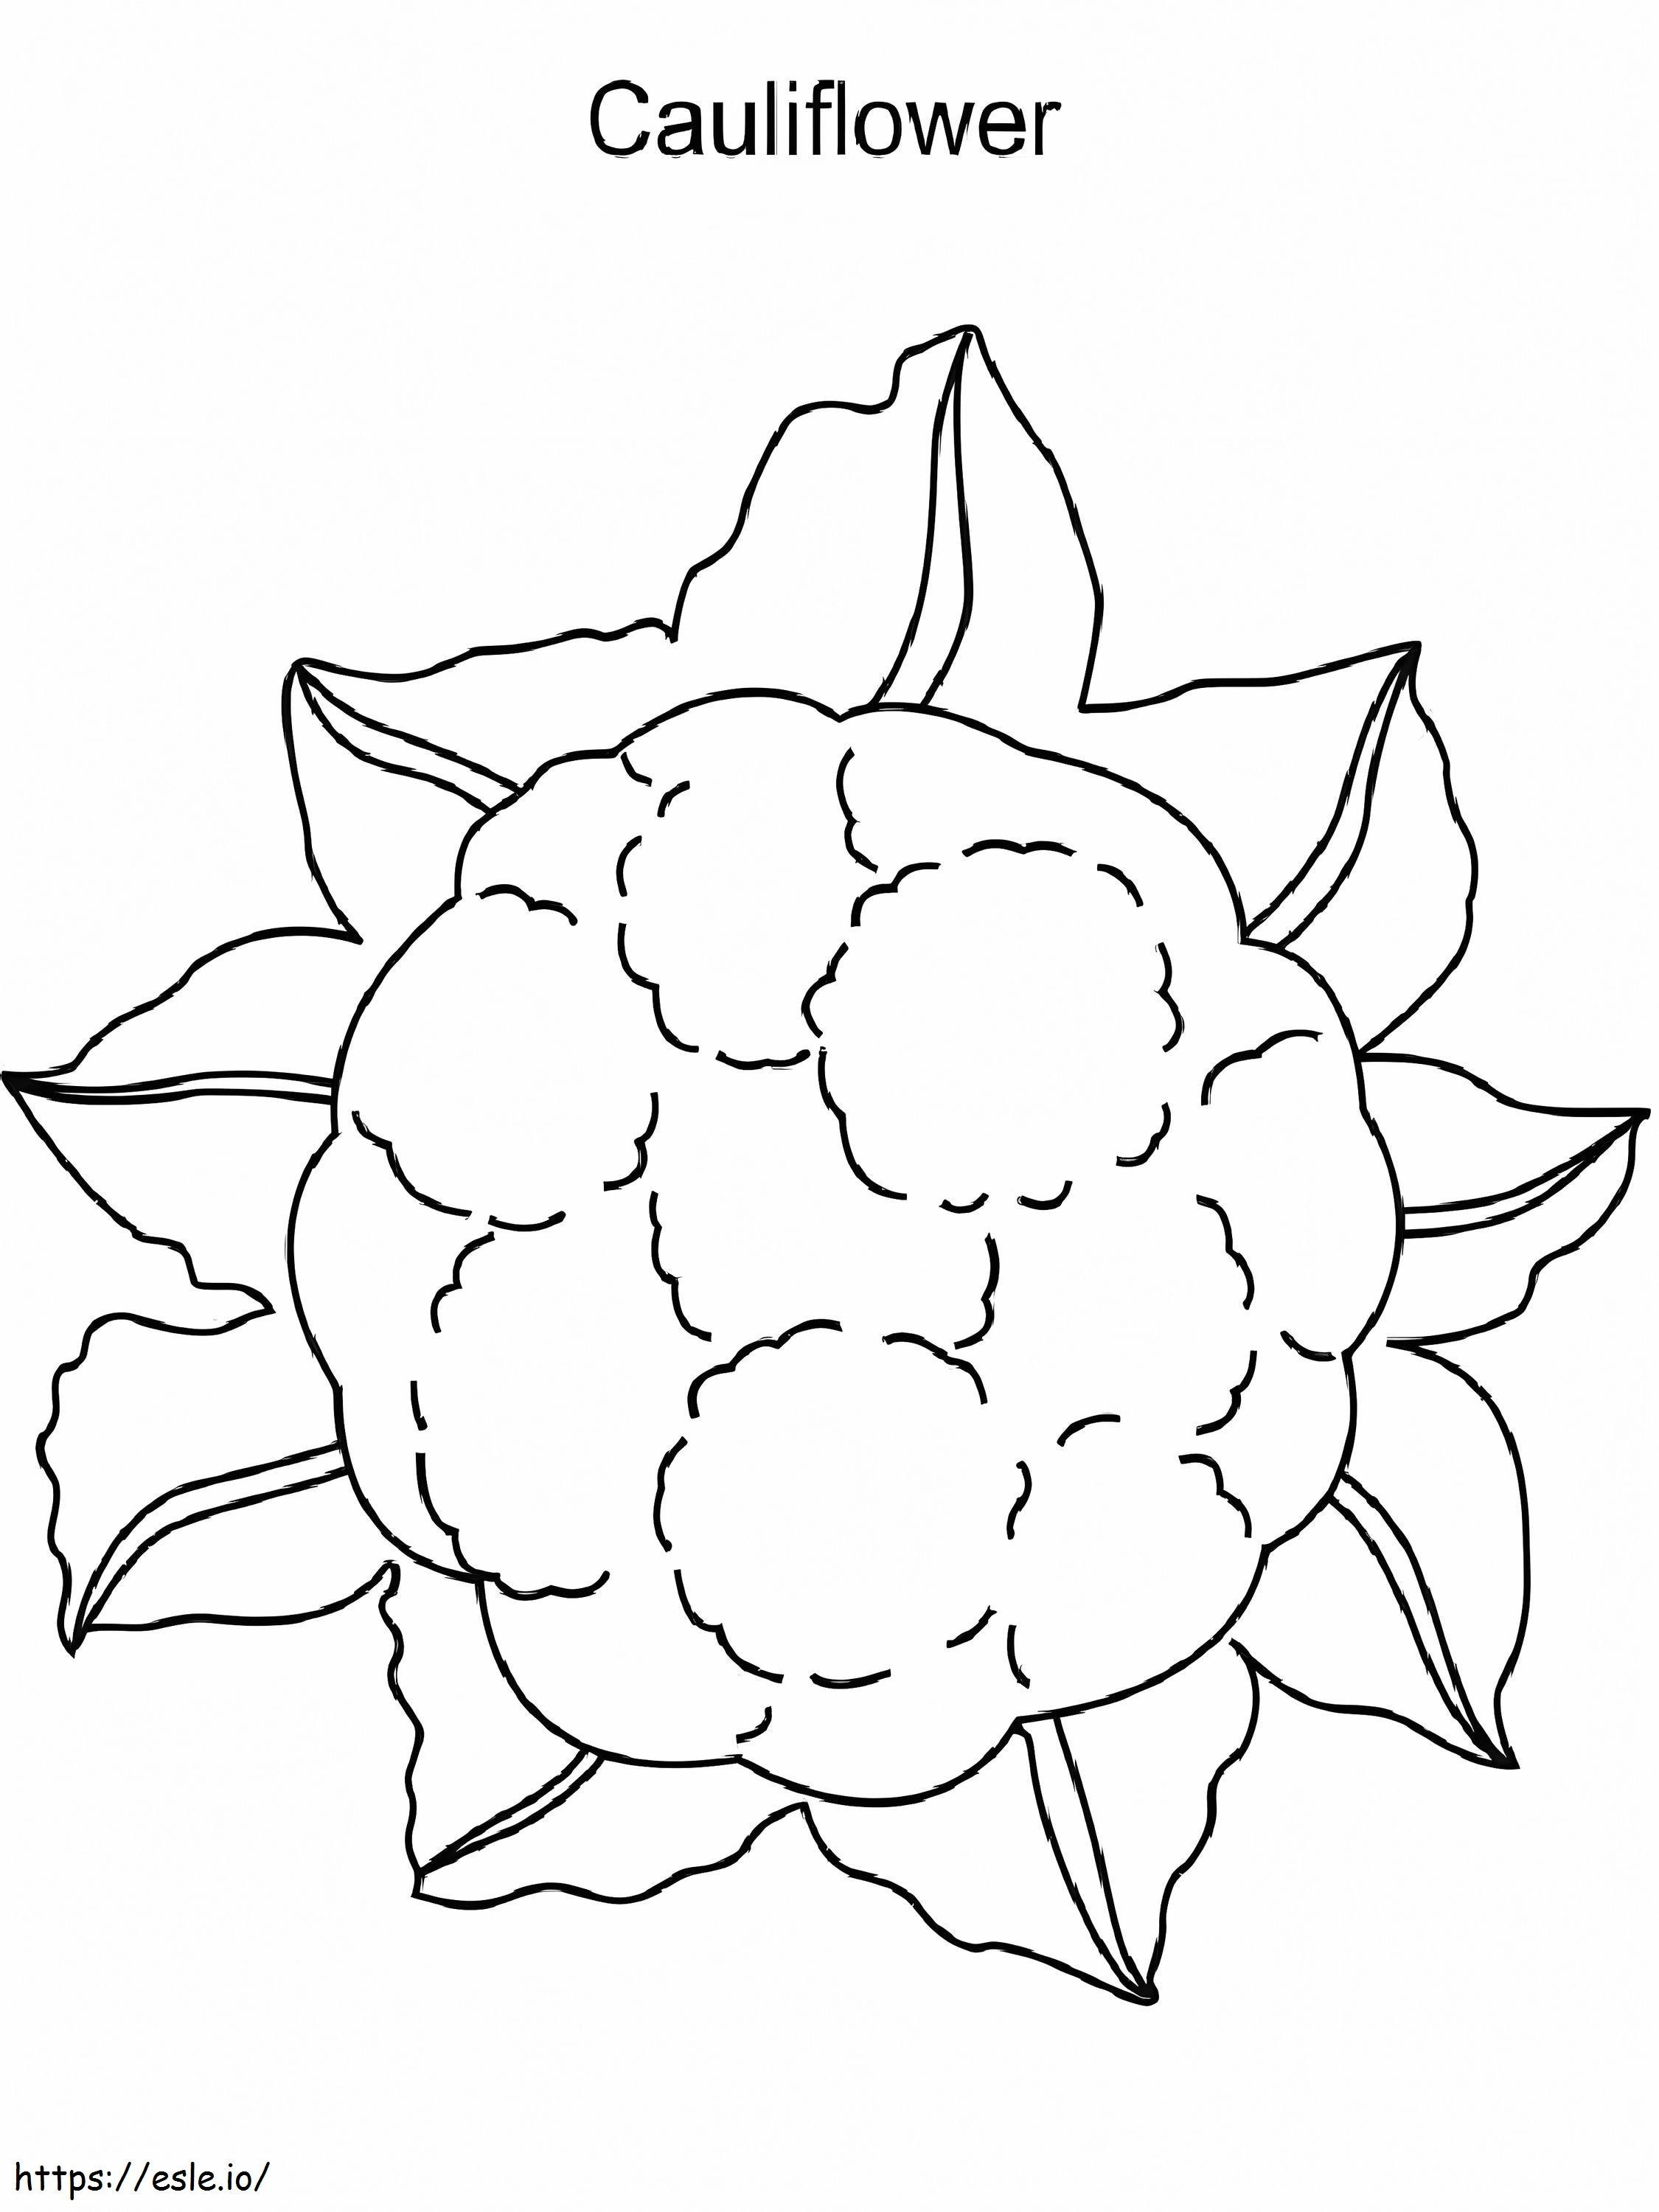 Sehr einfacher Blumenkohl ausmalbilder